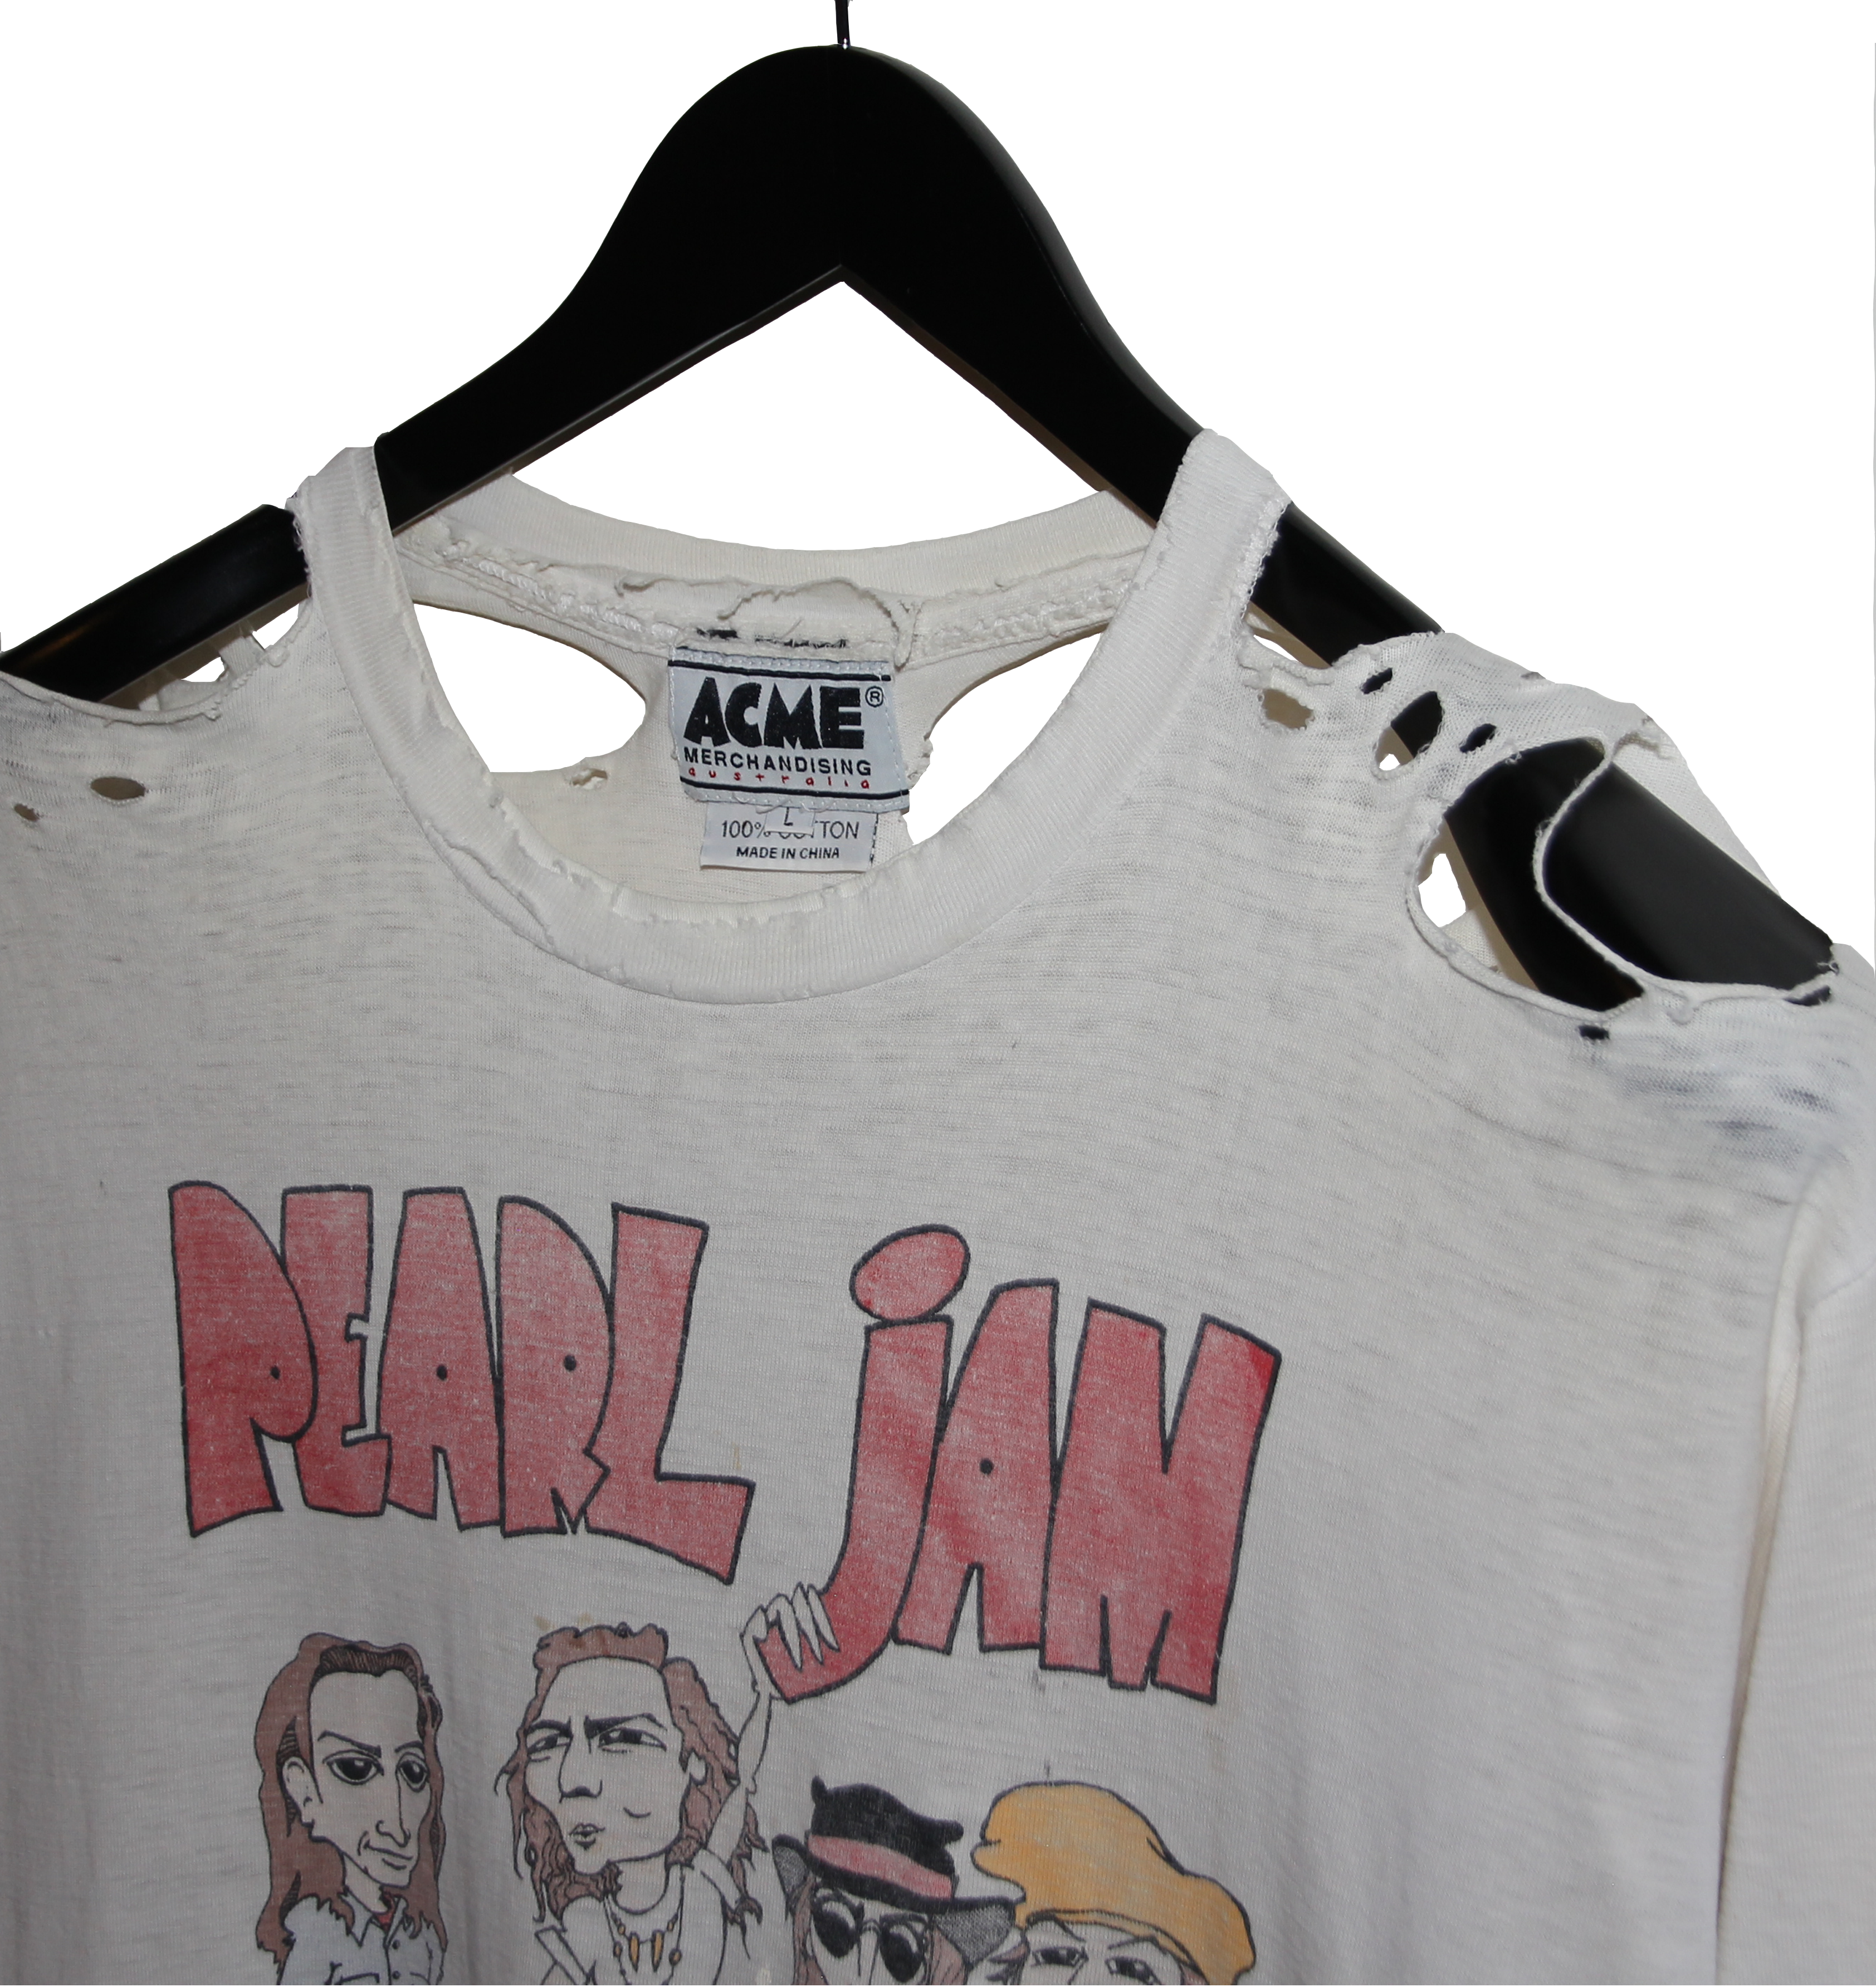 Pearl Jam 1992 World Jam Tour Shirt